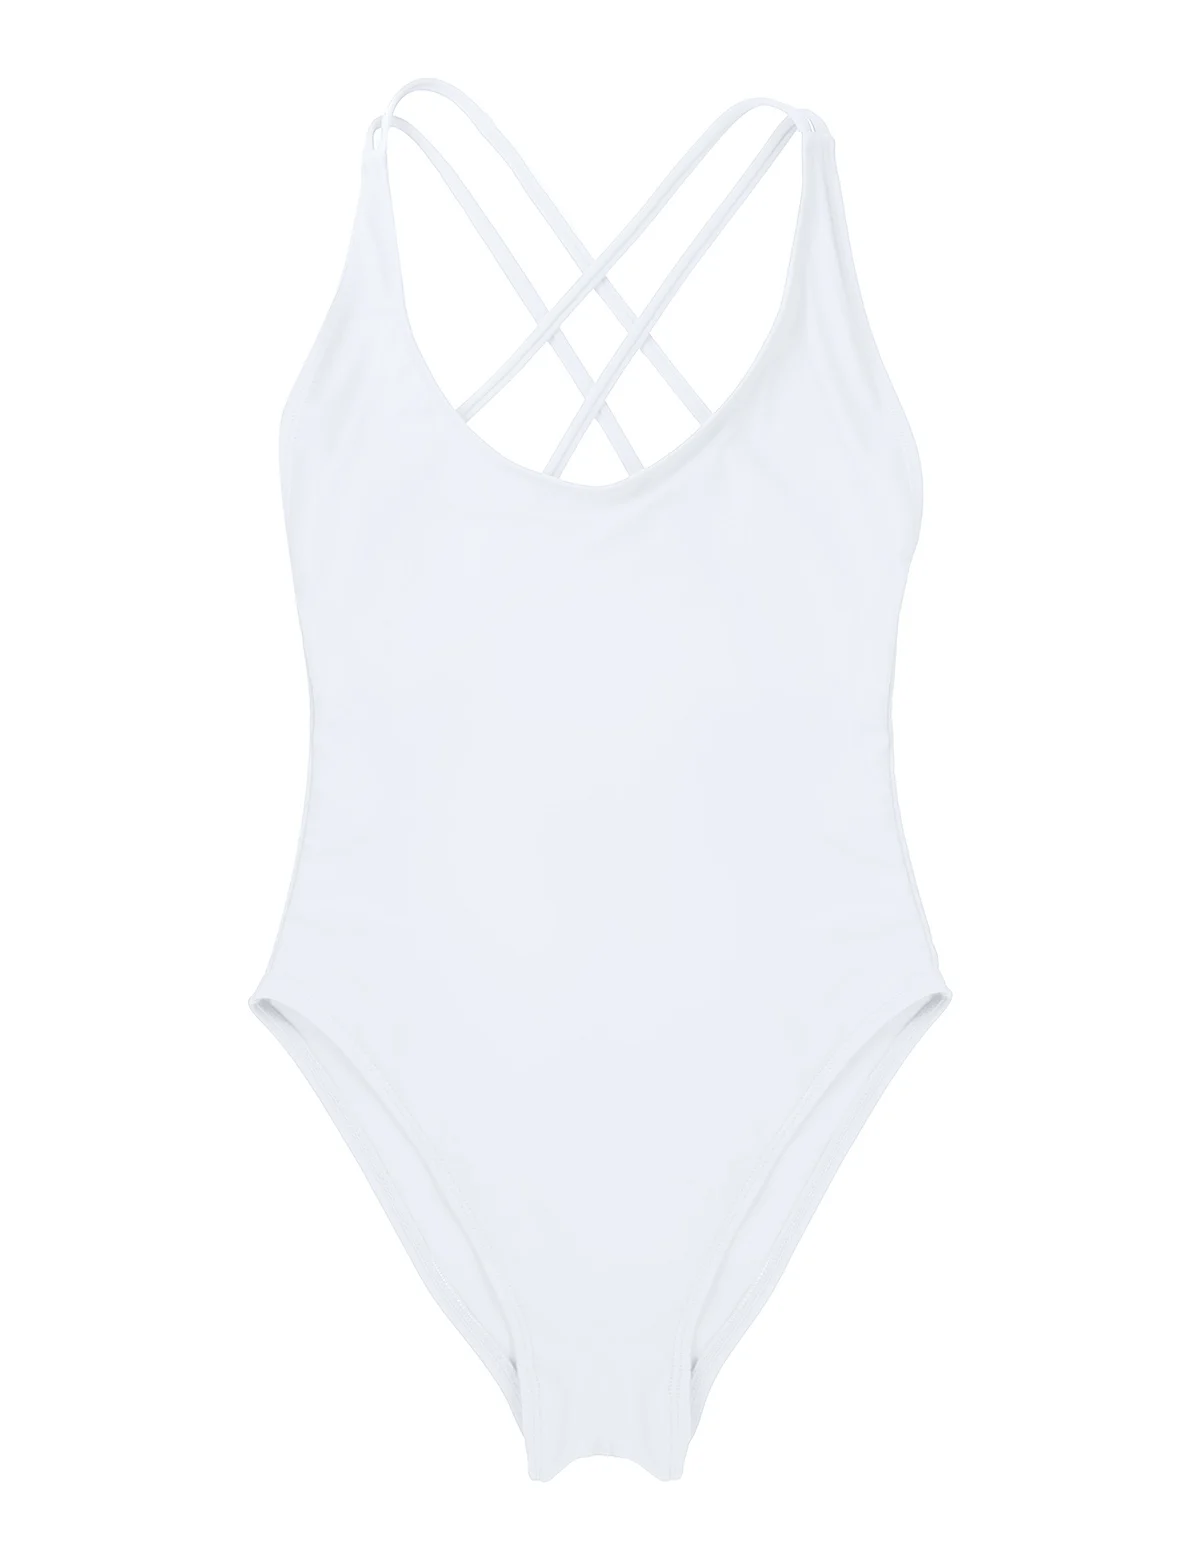 Женский сдельный глубокий u-образный вырез крест-накрест на спине, высокий вырез, без подкладки, купальник, купальный костюм, вечерние, пляжная одежда, купальники - Цвет: White